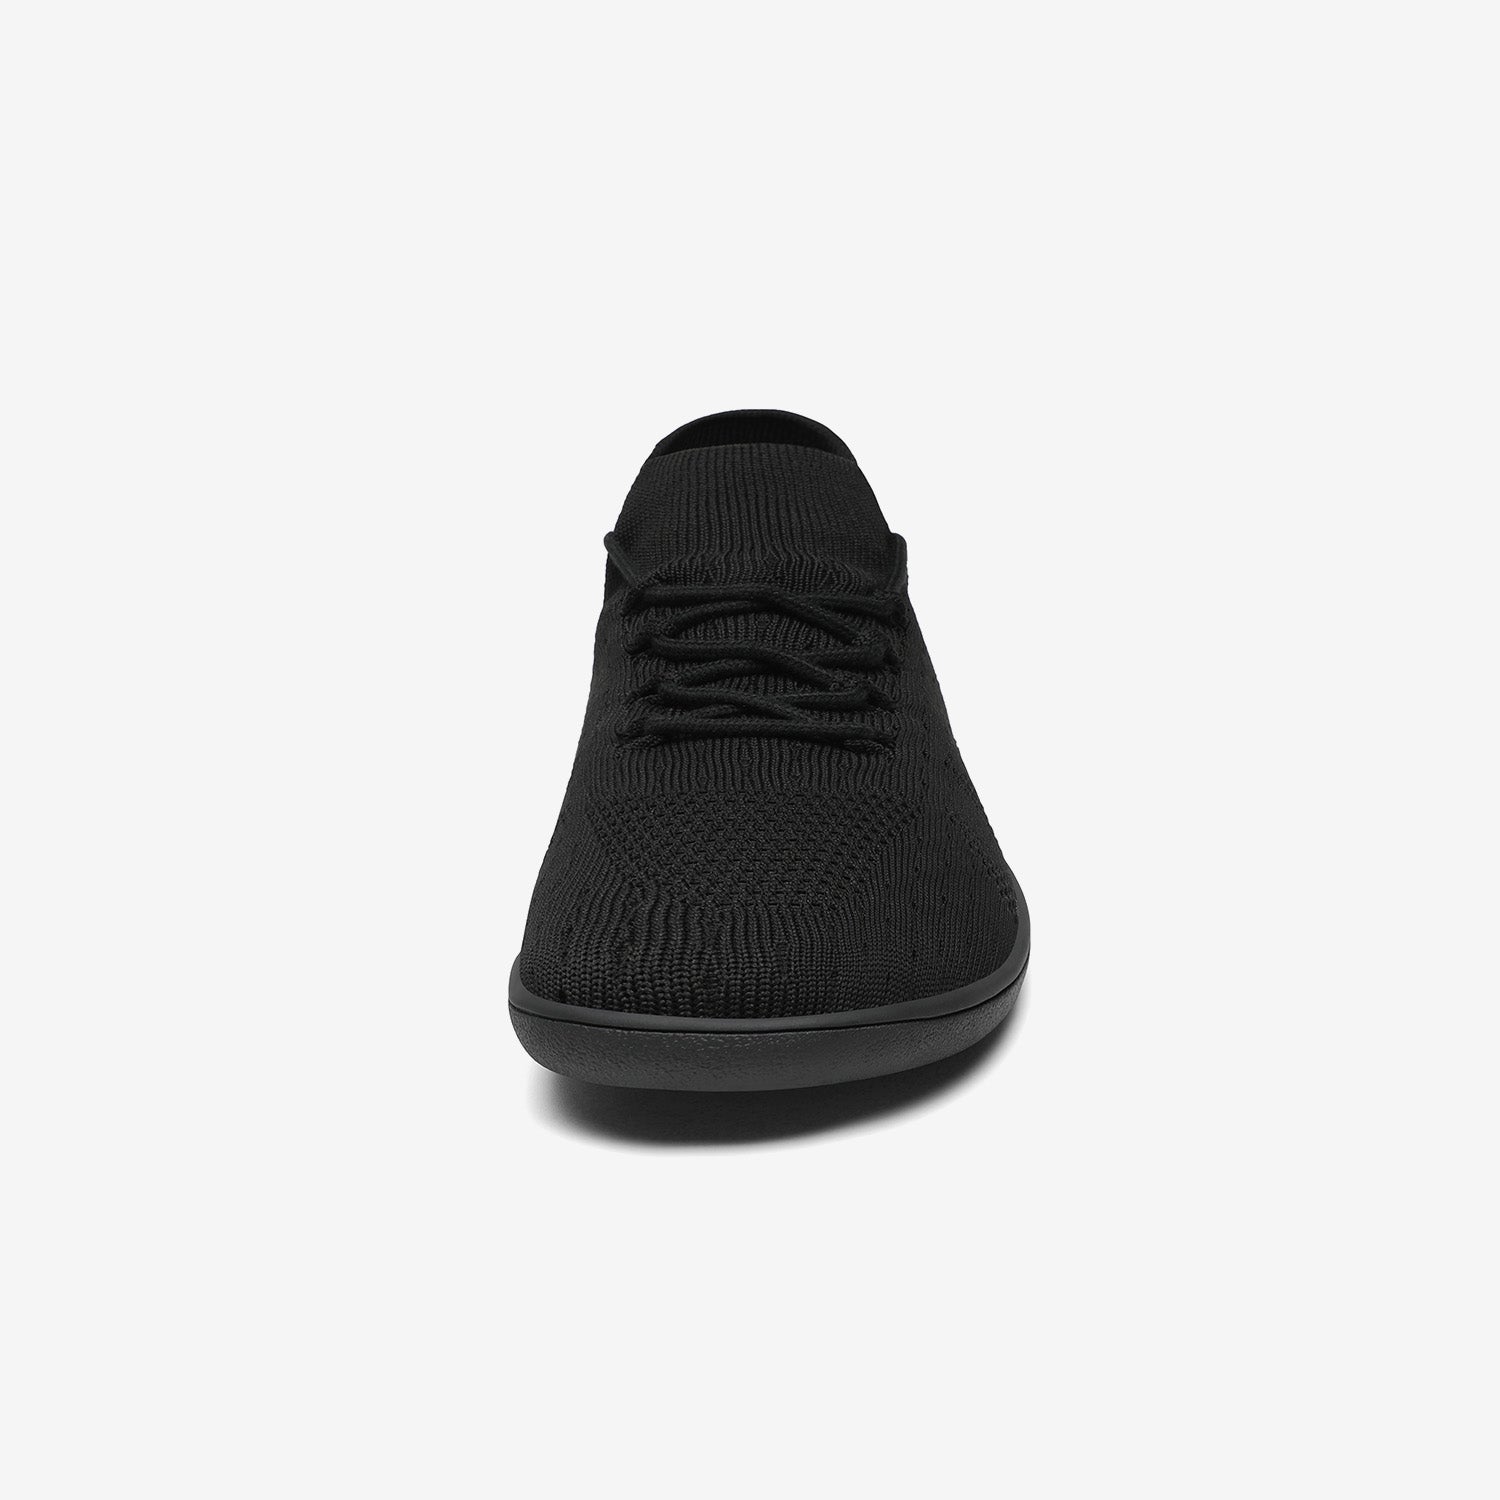 Agile II - Zapatos Barefoot